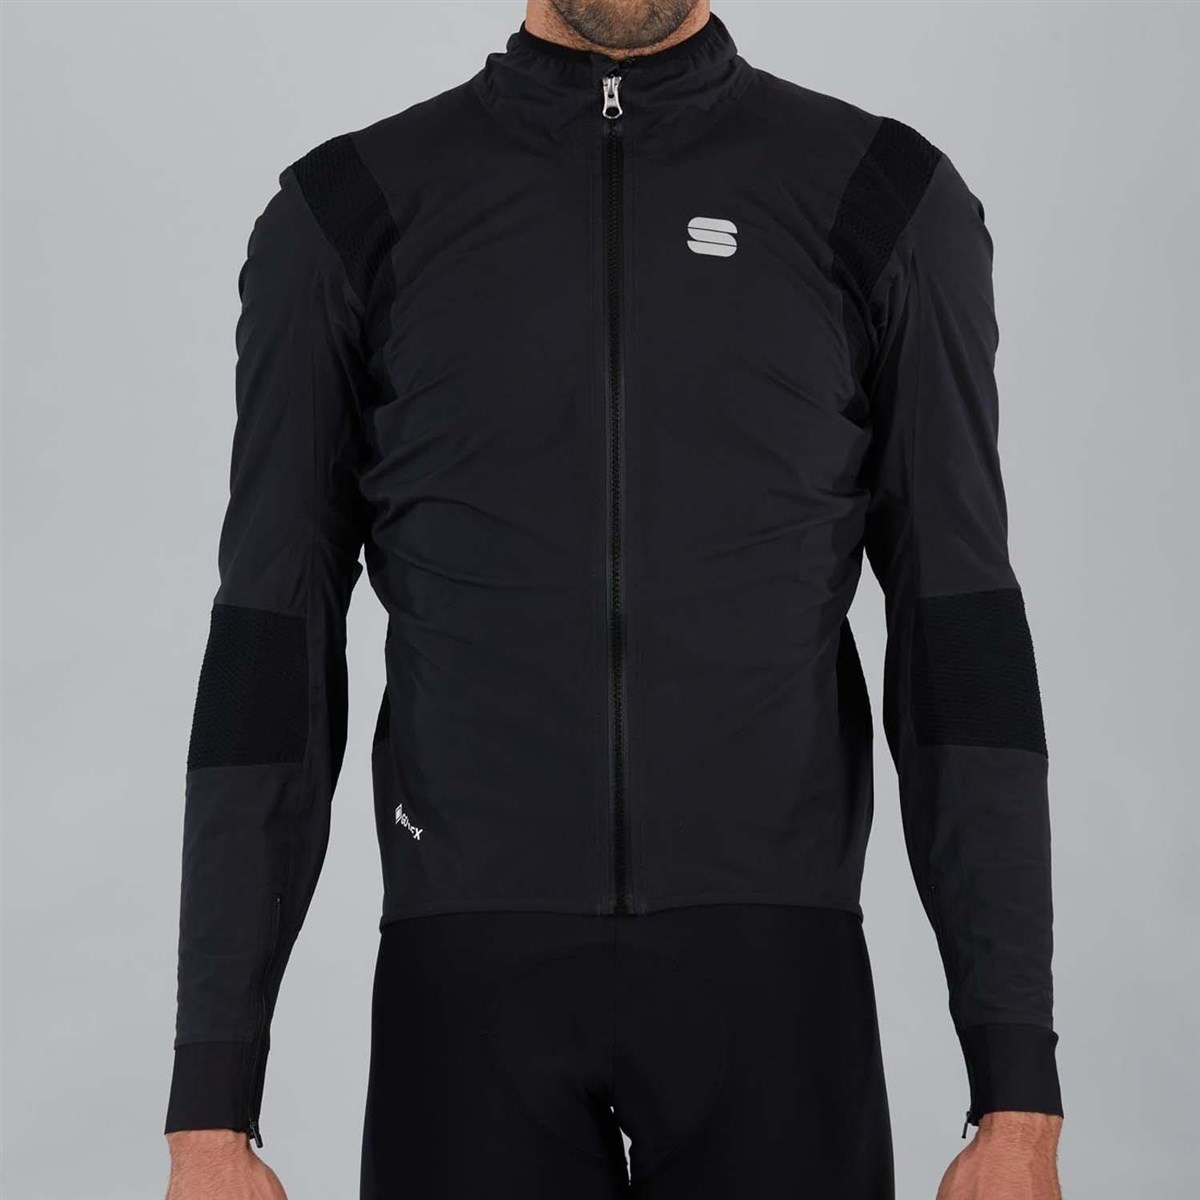 Sportful Aqua Pro Long Sleeve Cycling Jacket product image